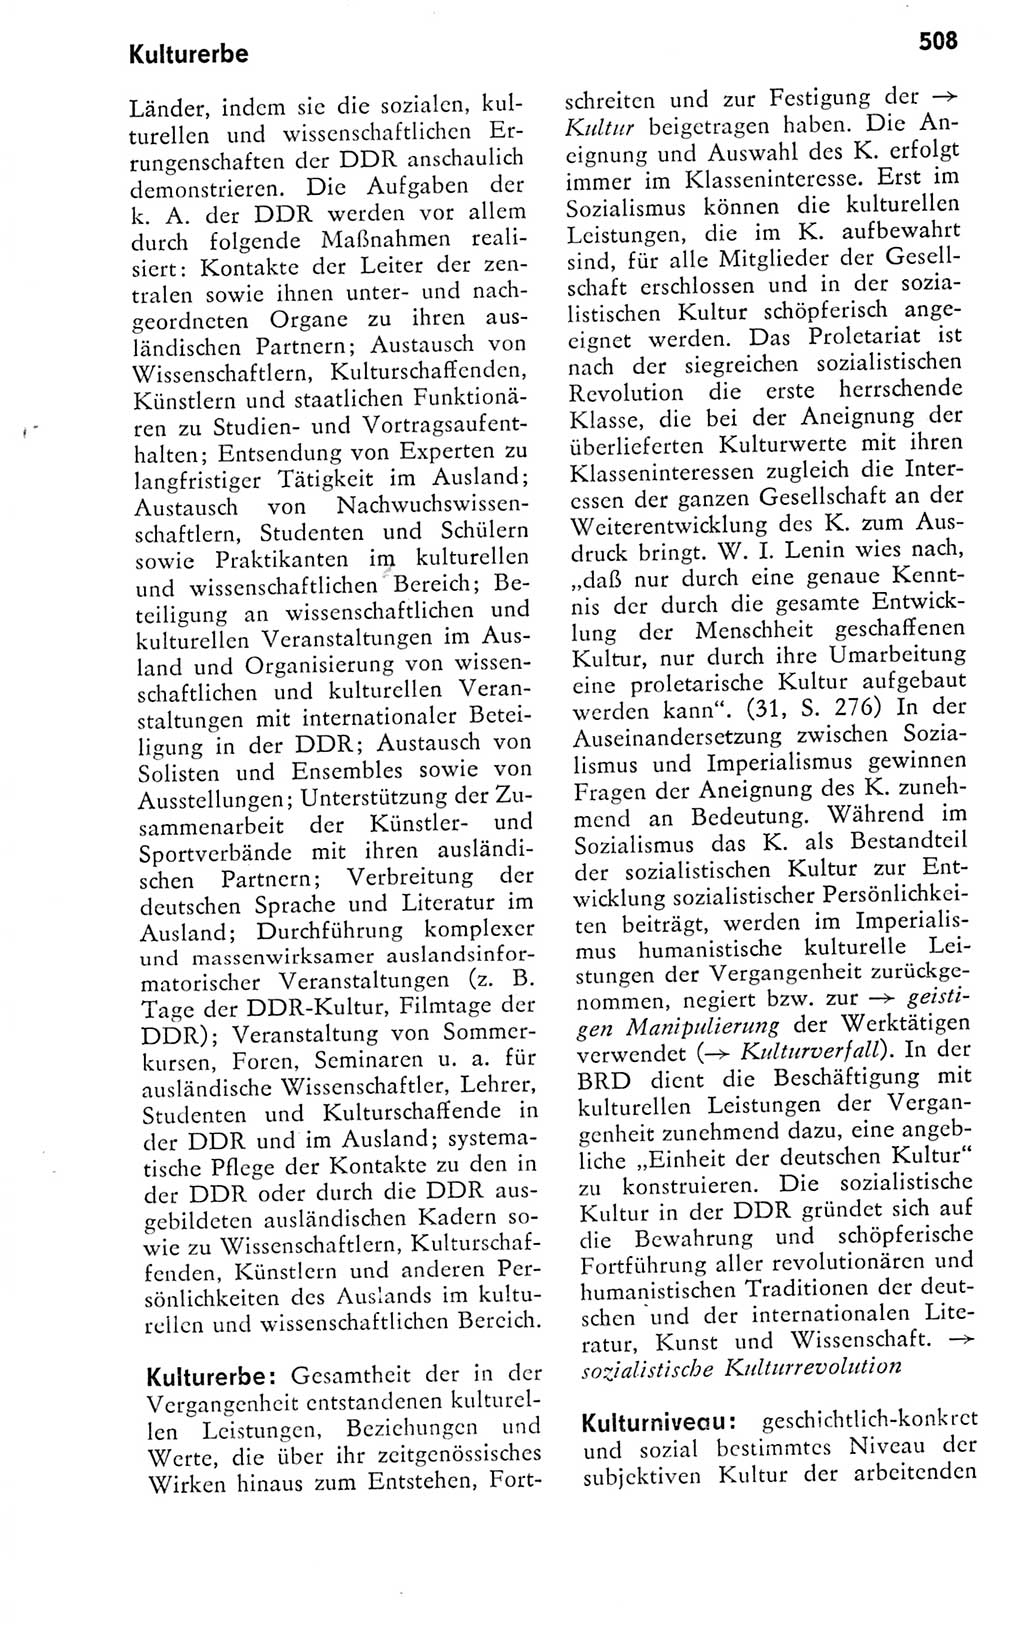 Kleines politisches Wörterbuch [Deutsche Demokratische Republik (DDR)] 1978, Seite 508 (Kl. pol. Wb. DDR 1978, S. 508)